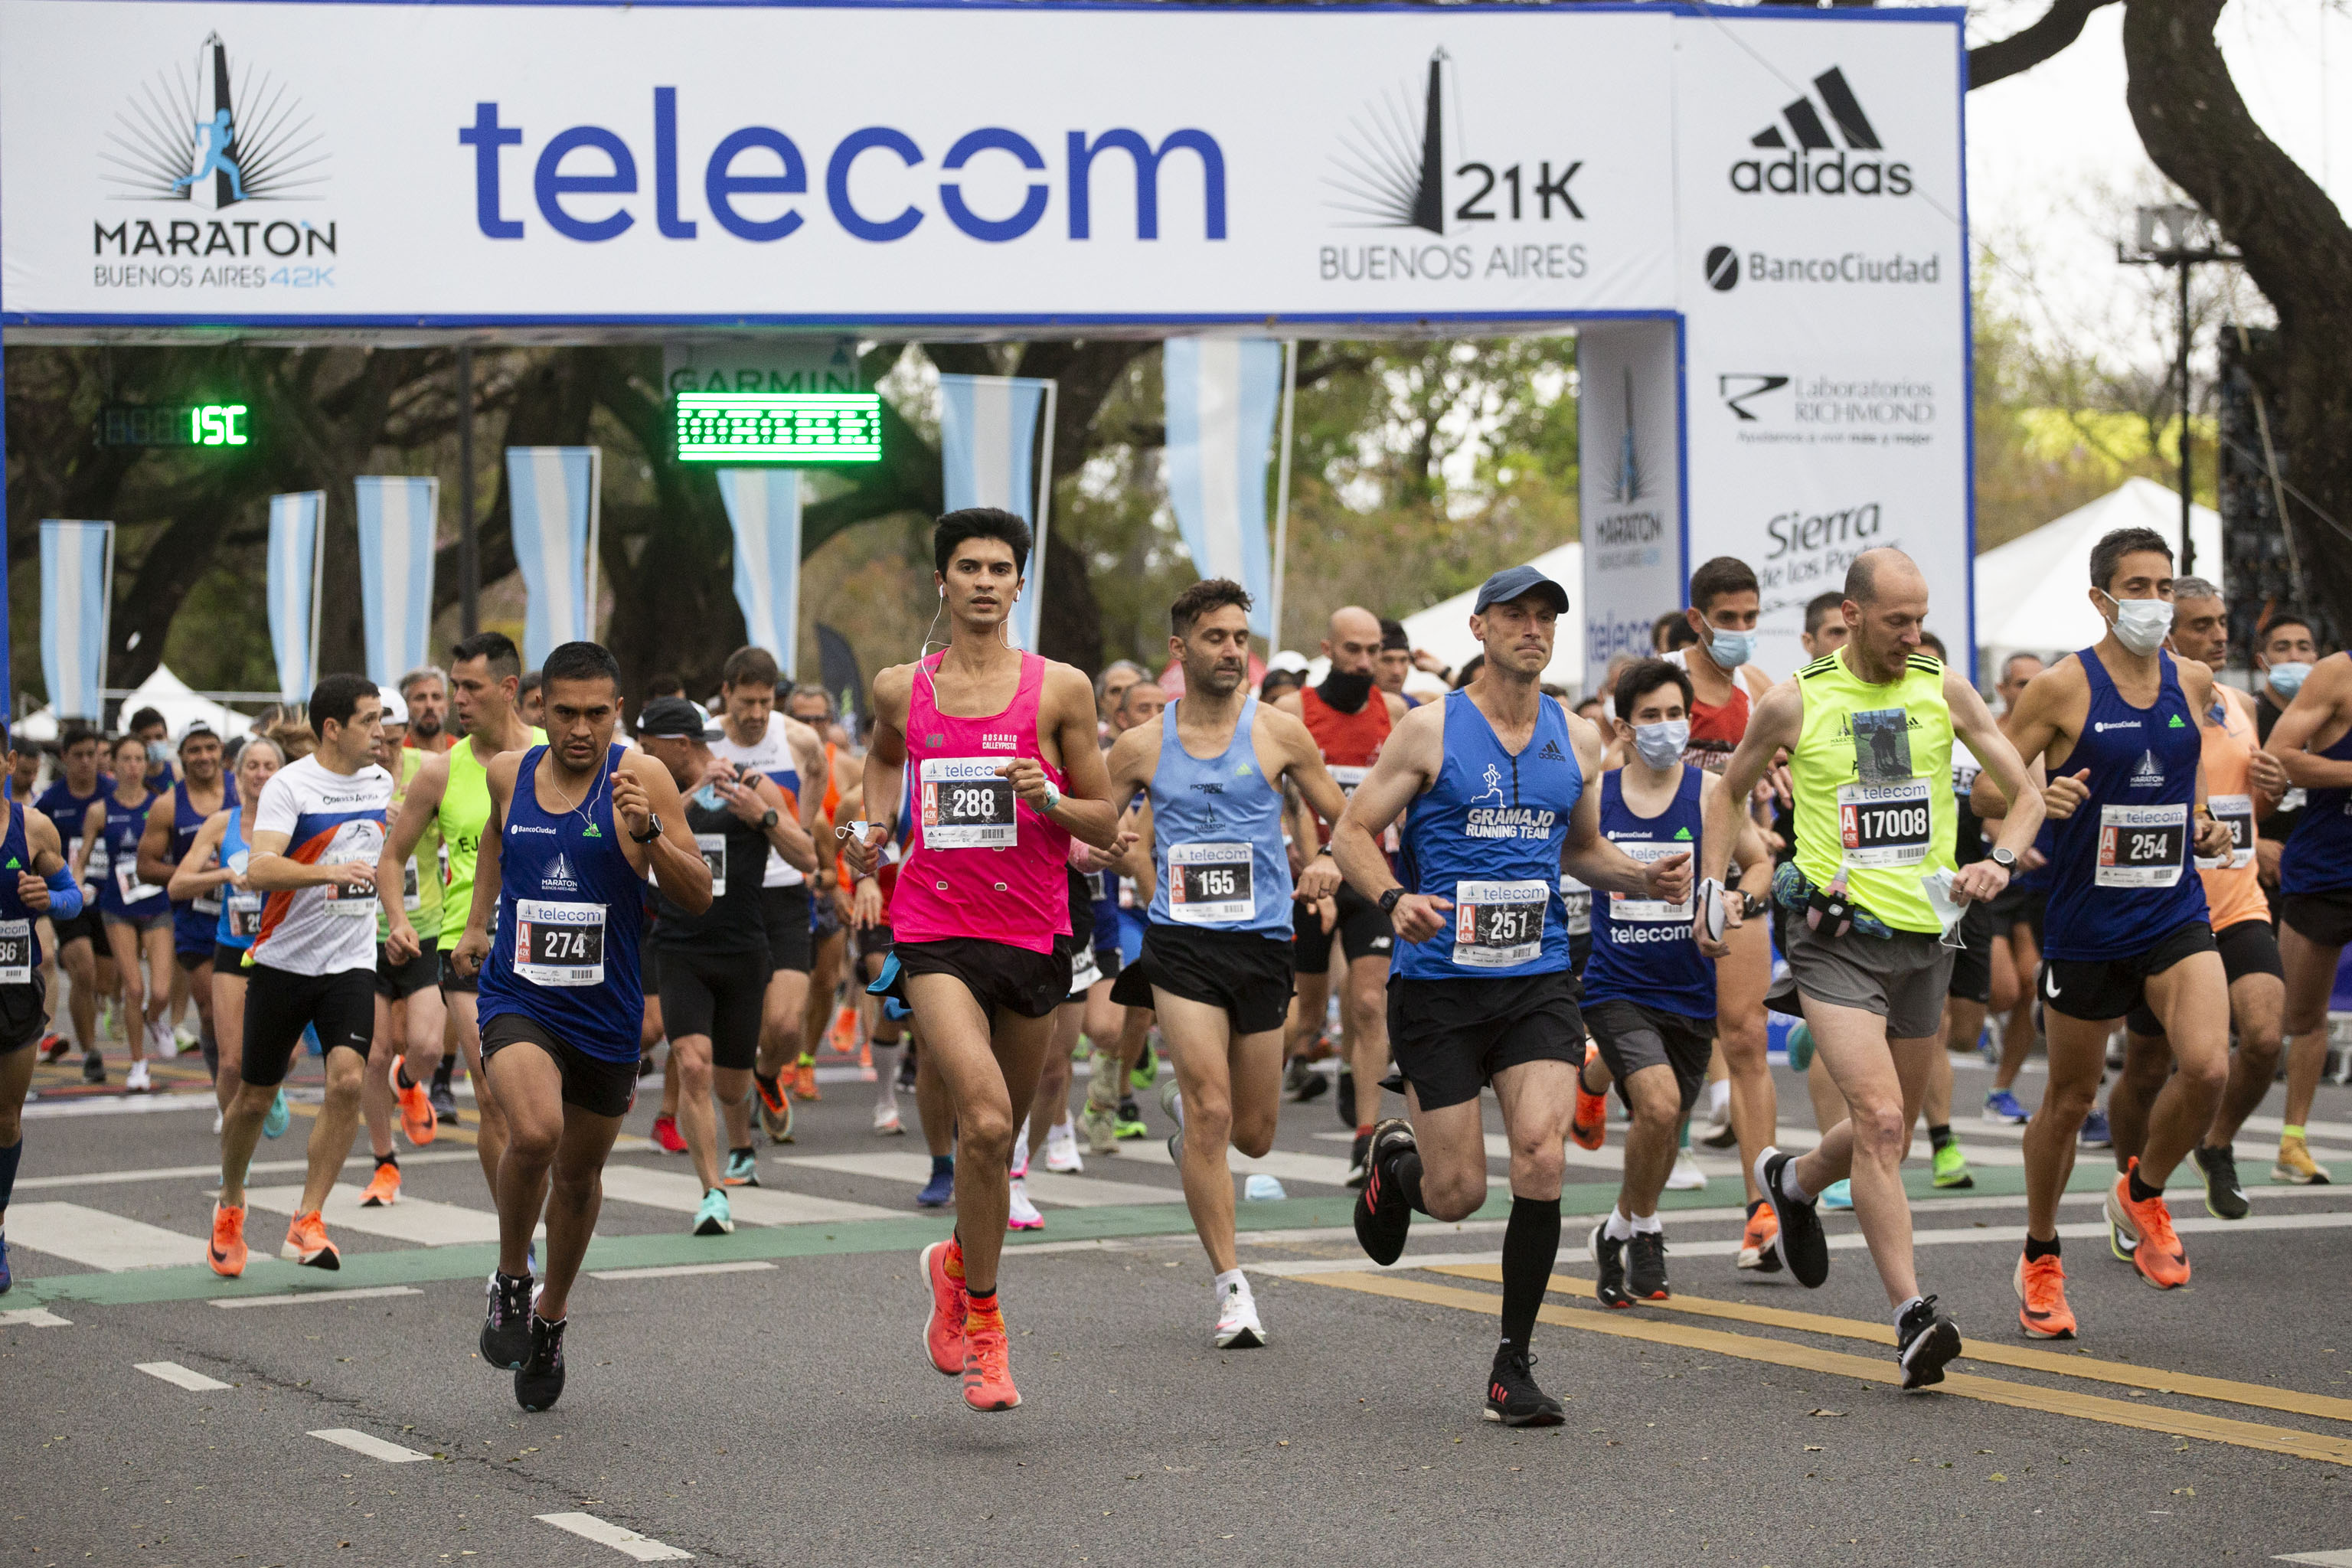 ◉ Exitoso final de la maratón de Buenos Aires que tuvo más de 13 mil participantes y llenó de color a la ciudad